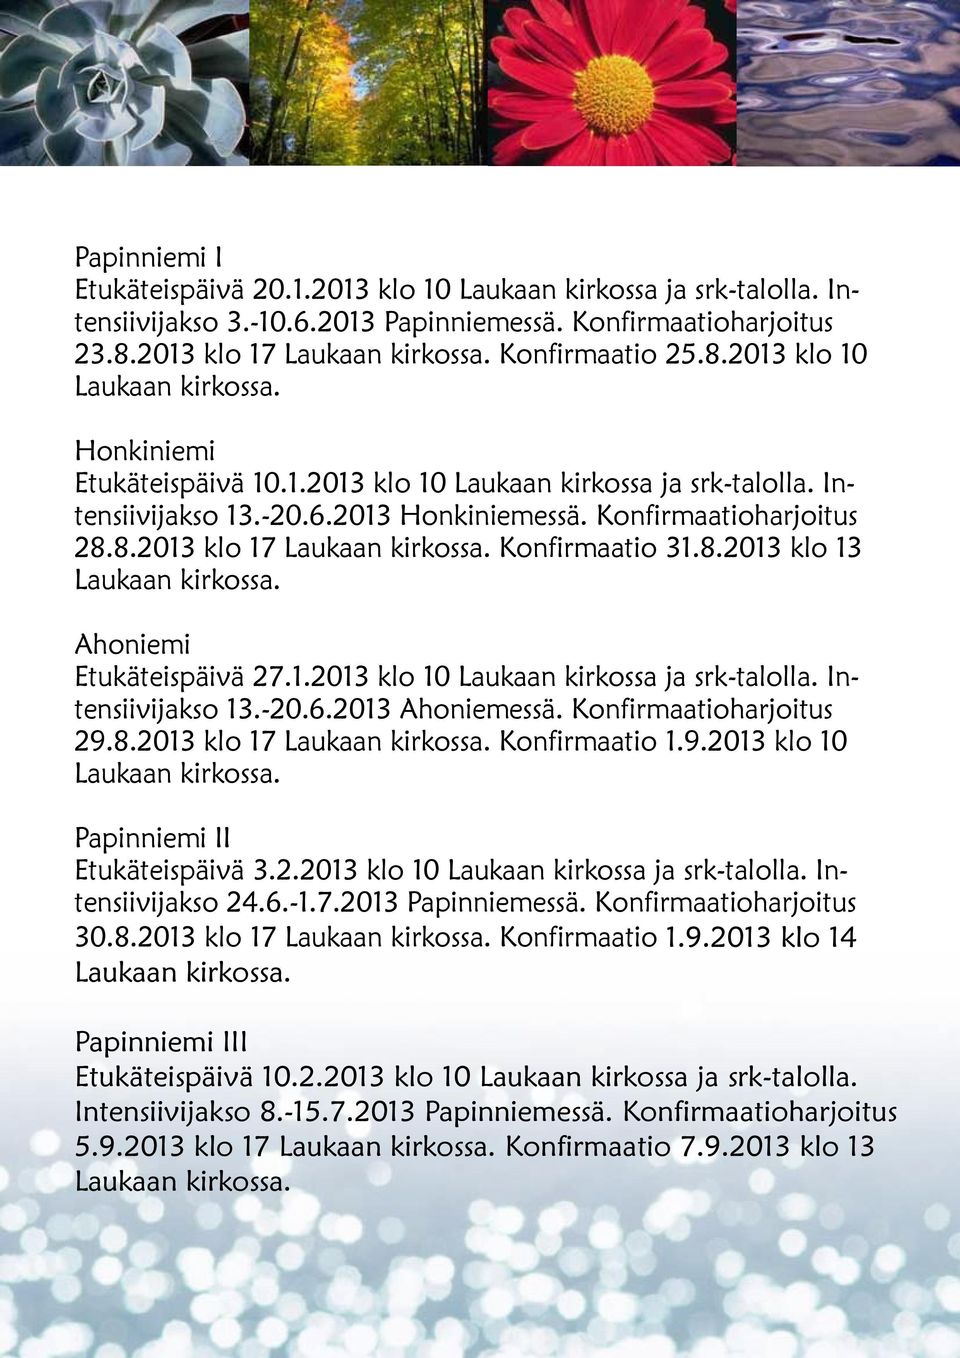 Konfirmaatioharjoitus 29.8.2013 klo 17 Konfirmaatio 1.9.2013 klo 10 Papinniemi II Etukäteispäivä 3.2.2013 klo 10 Laukaan kirkossa ja srk-talolla. Intensiivijakso 24.6.-1.7.2013 Papinniemessä.